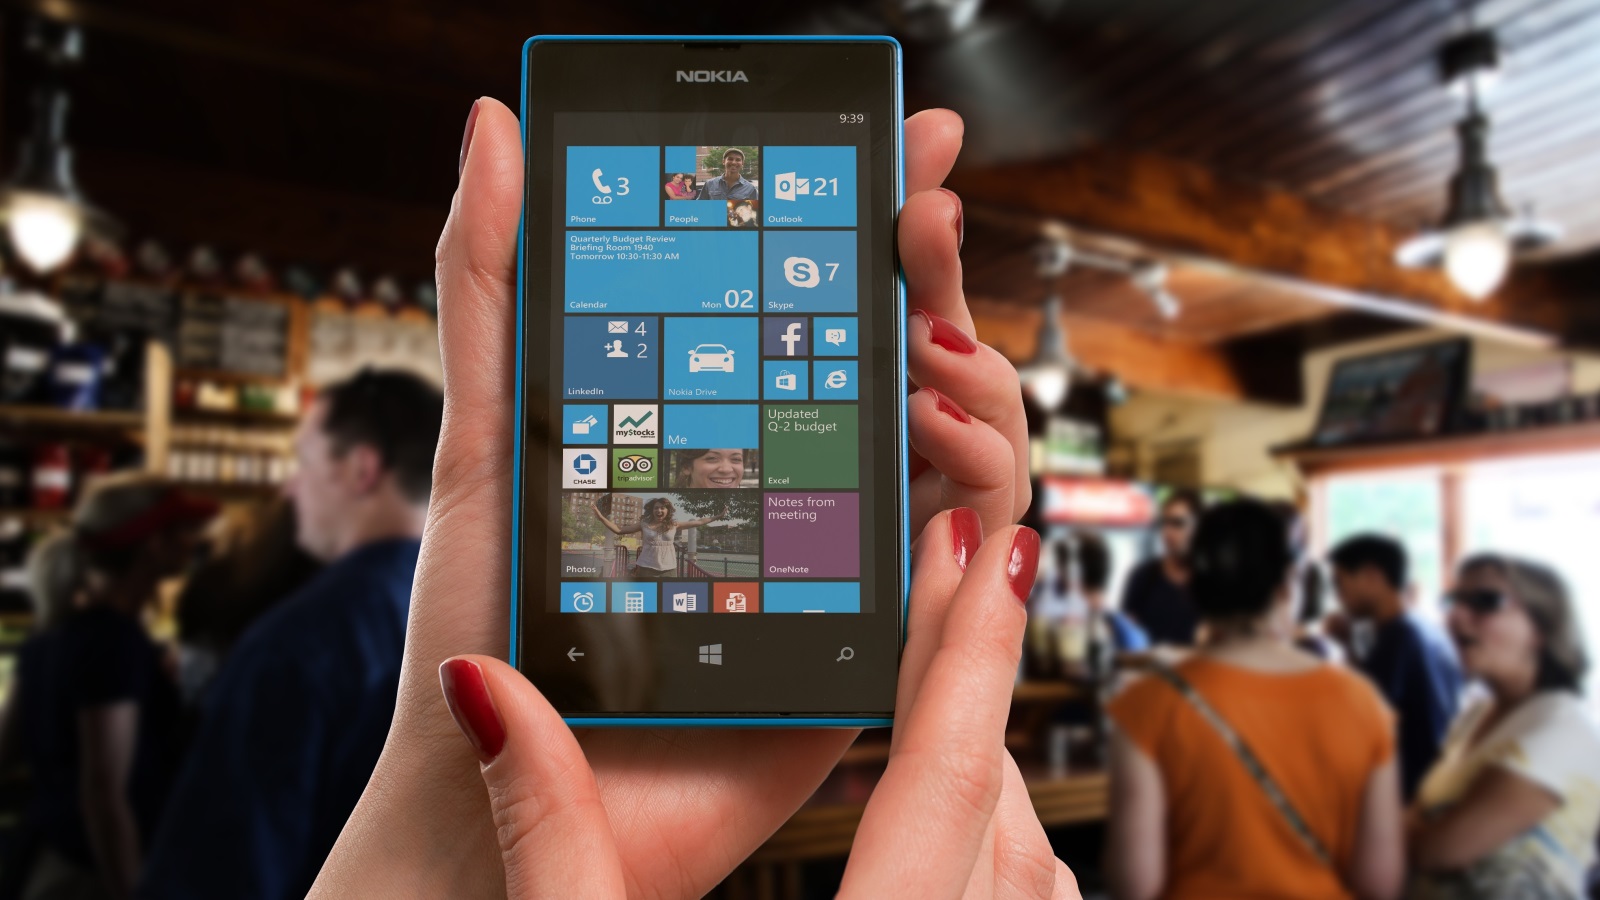 قد يكون نظام مايكروسوفت ويندوز موبايل Windows Mobile 10 هو الحل المناسب بالنسبة لبعض الشركات خصوصًا أنه يمتلك متجرًا للتطبيقات مع دعم من شركة كبيرة بحجم مايكروسوفت